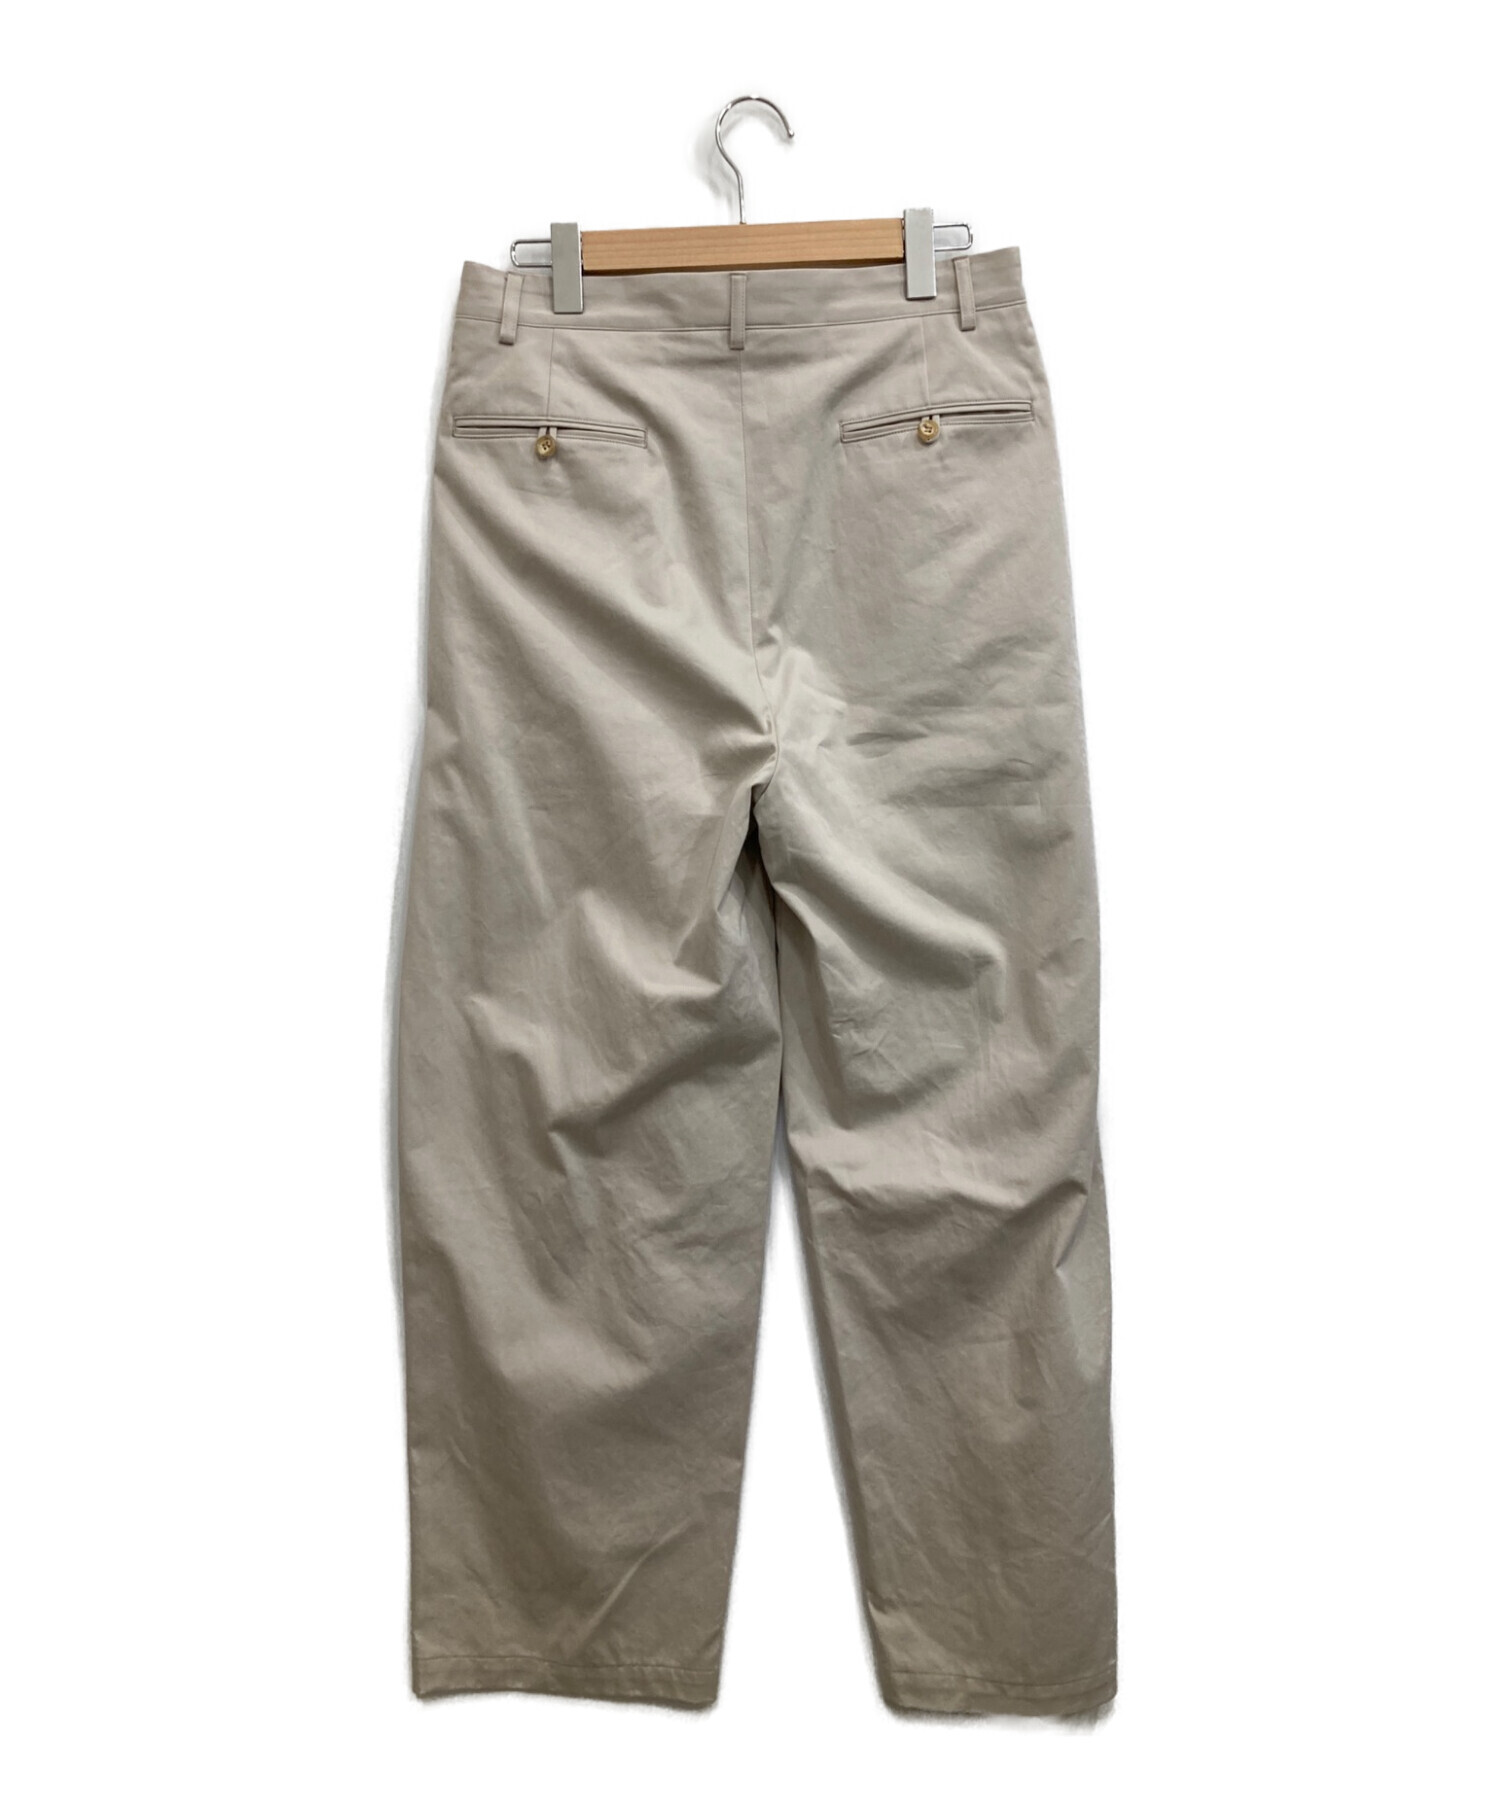 A.PRESSE (アプレッセ) Chino Trousers Type.1 ベージュ サイズ:2